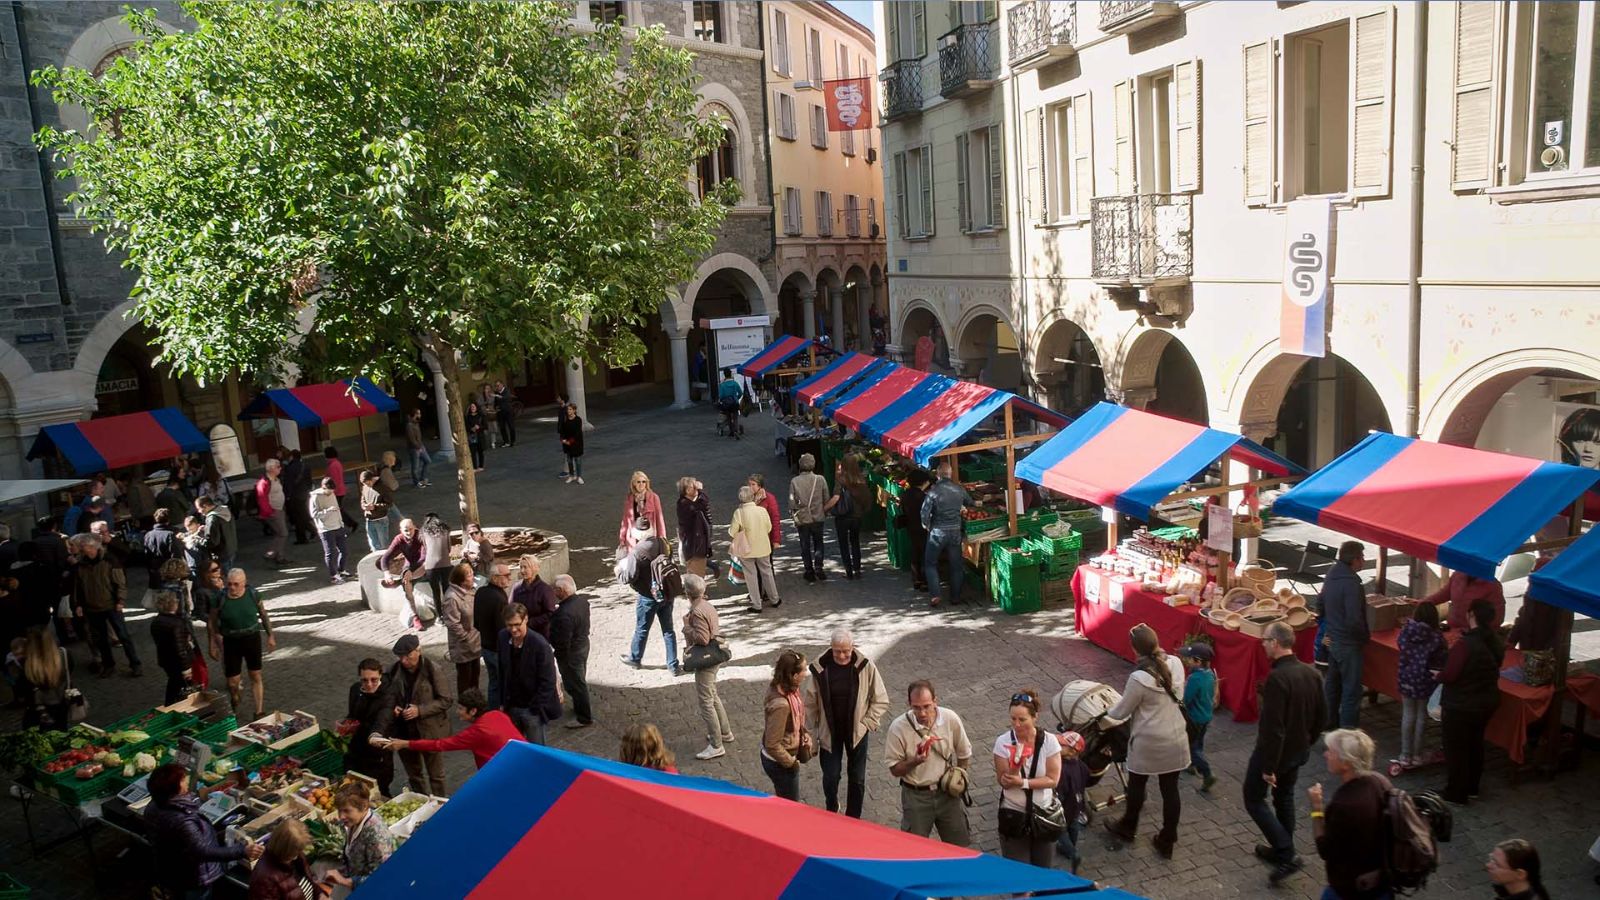 Piazza Nosetto, le marché du samedi matin